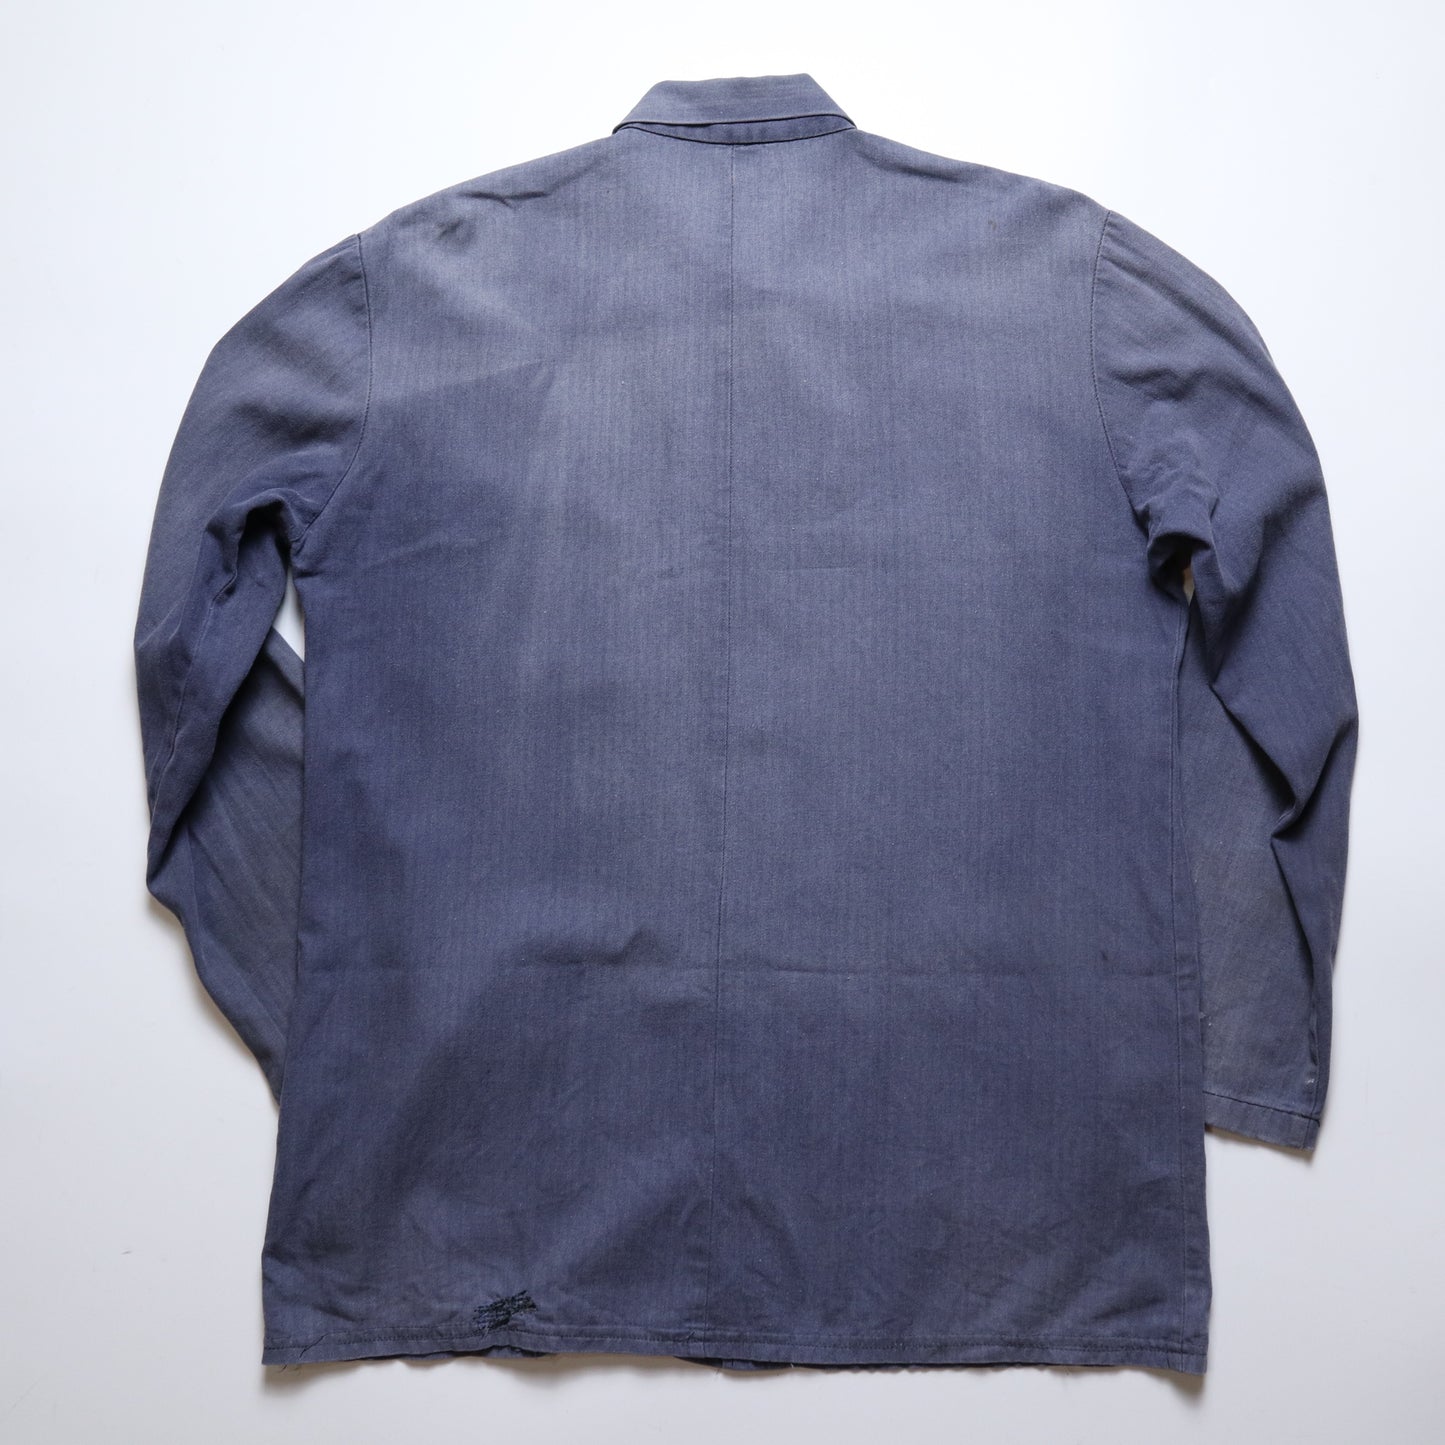 人字紋法國工裝外套/HBT Work jacket